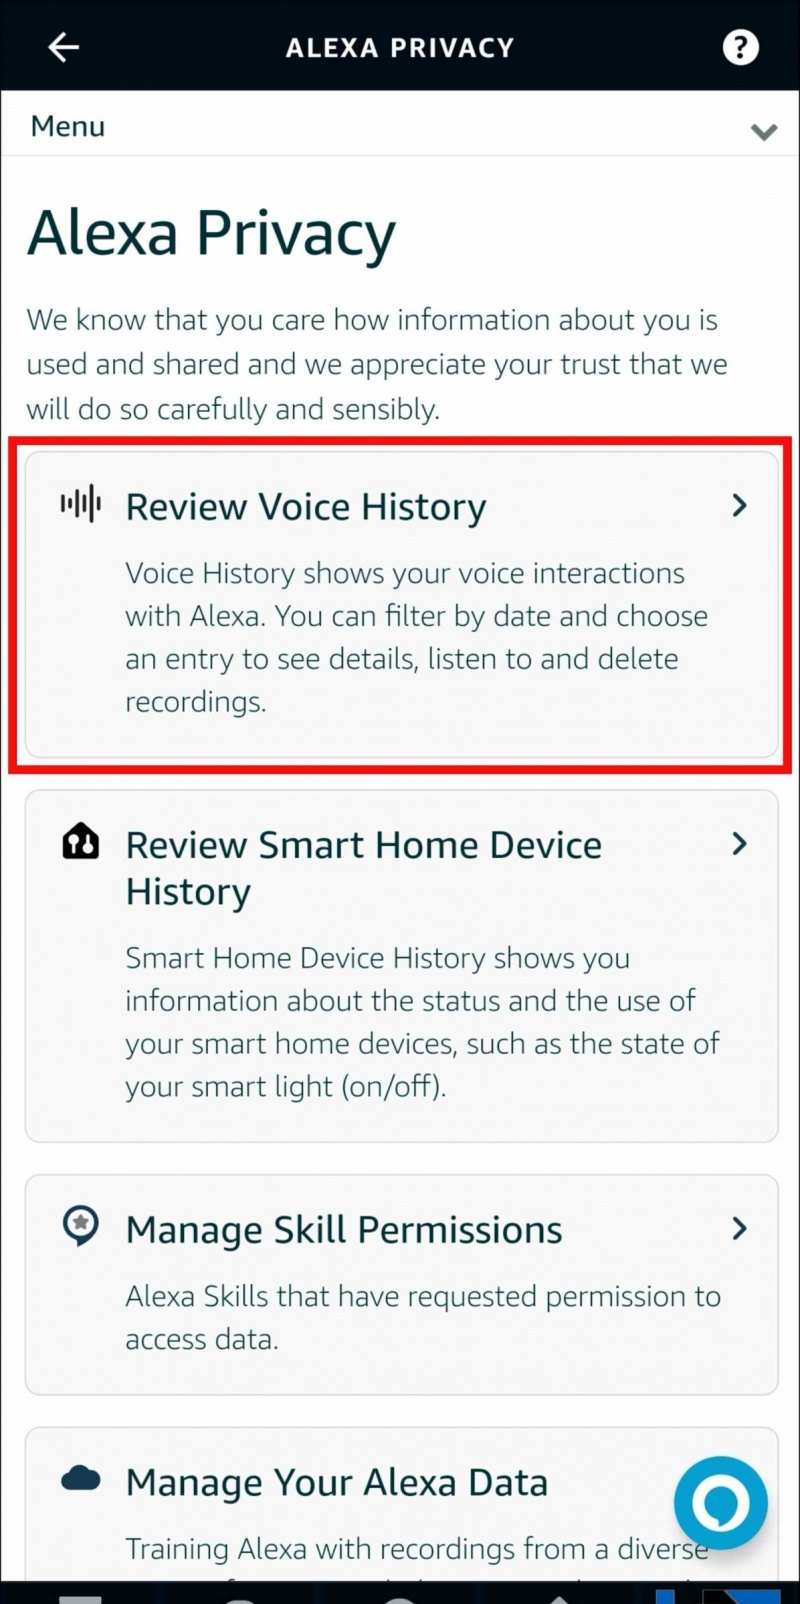   Ascolta la cronologia vocale registrata sull'app Alexa